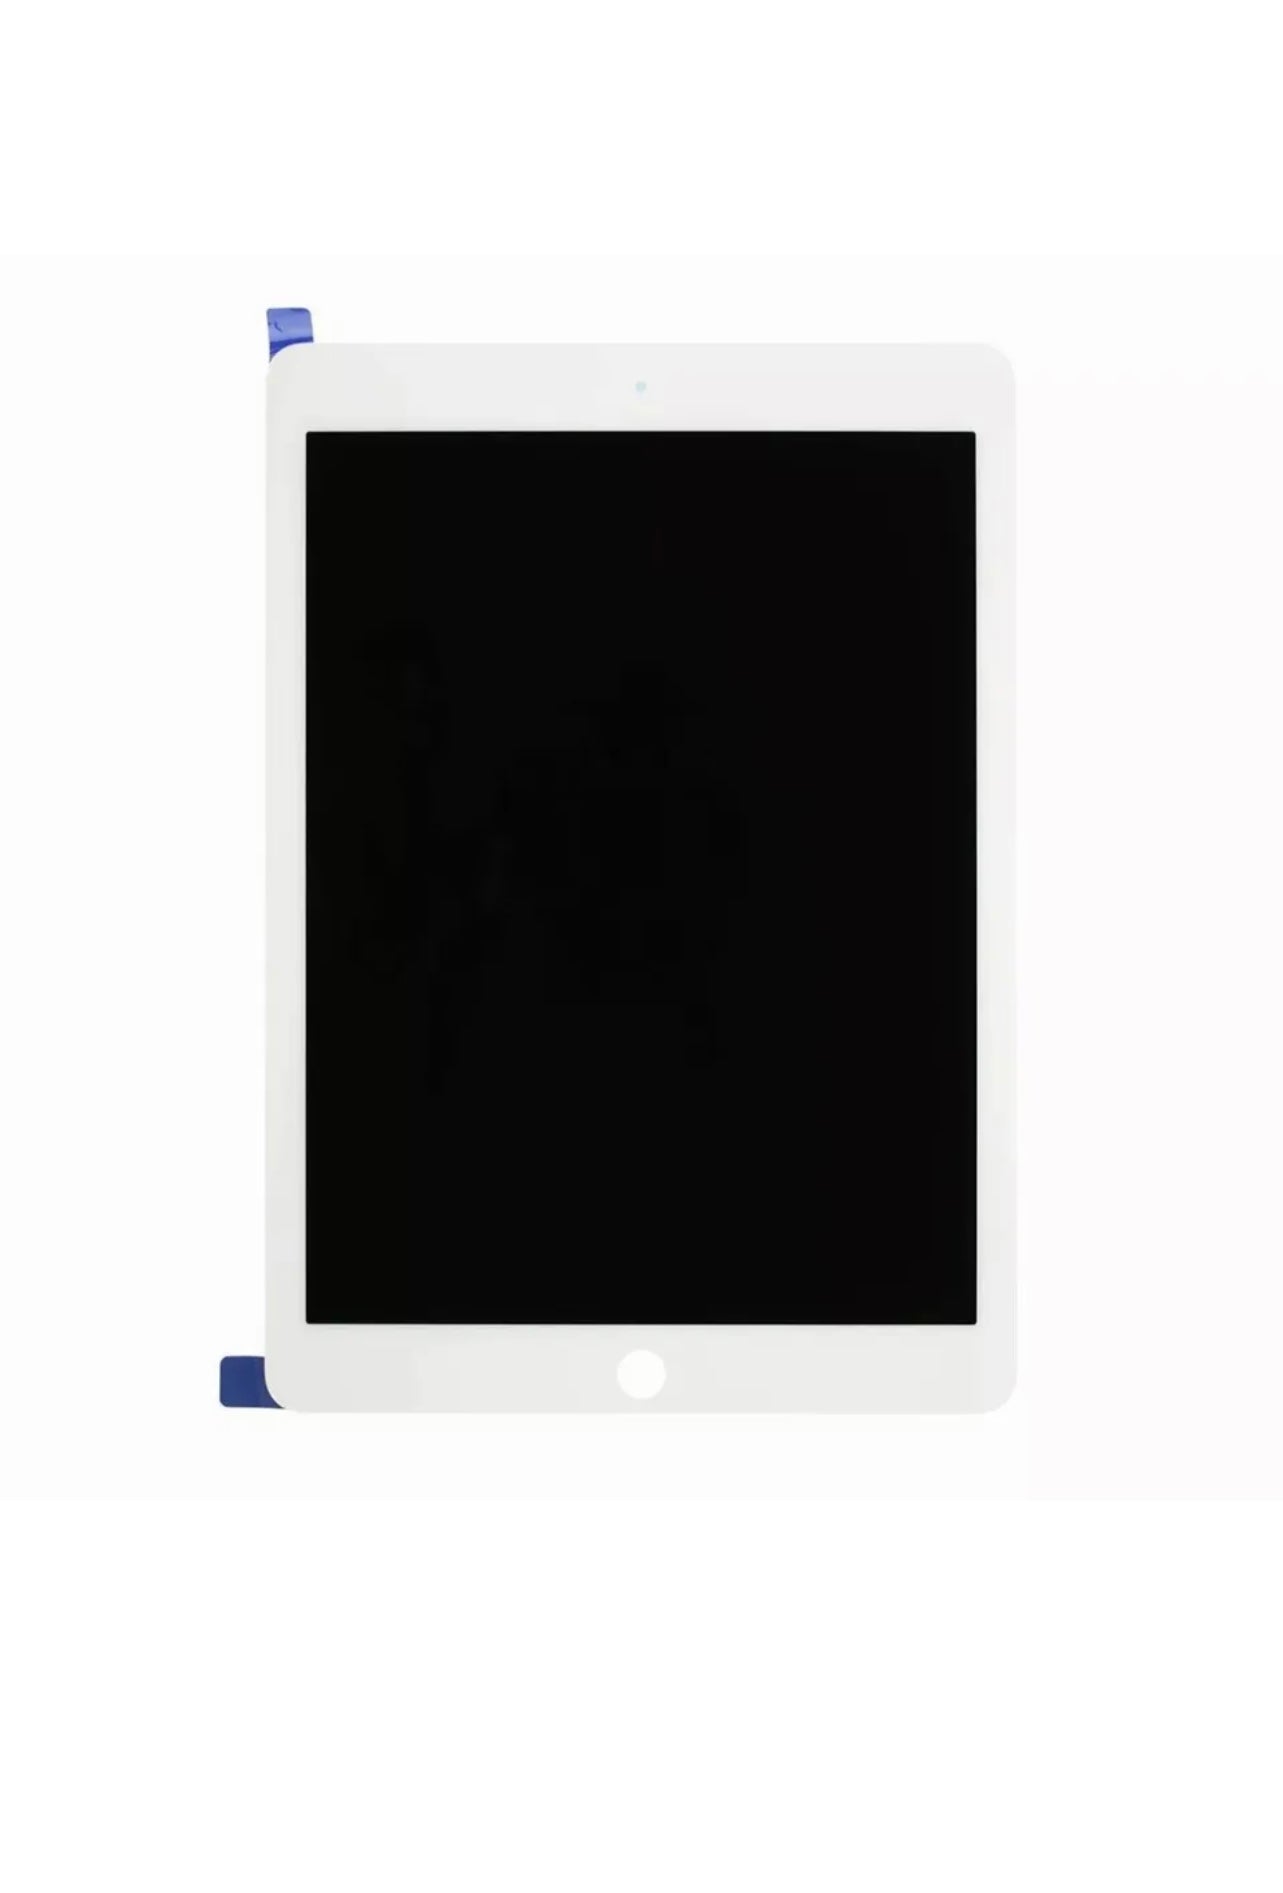 Ipad Air 3 (2019) Lcd  Screen Display Touch   A2152 A2153 A2154 A2123